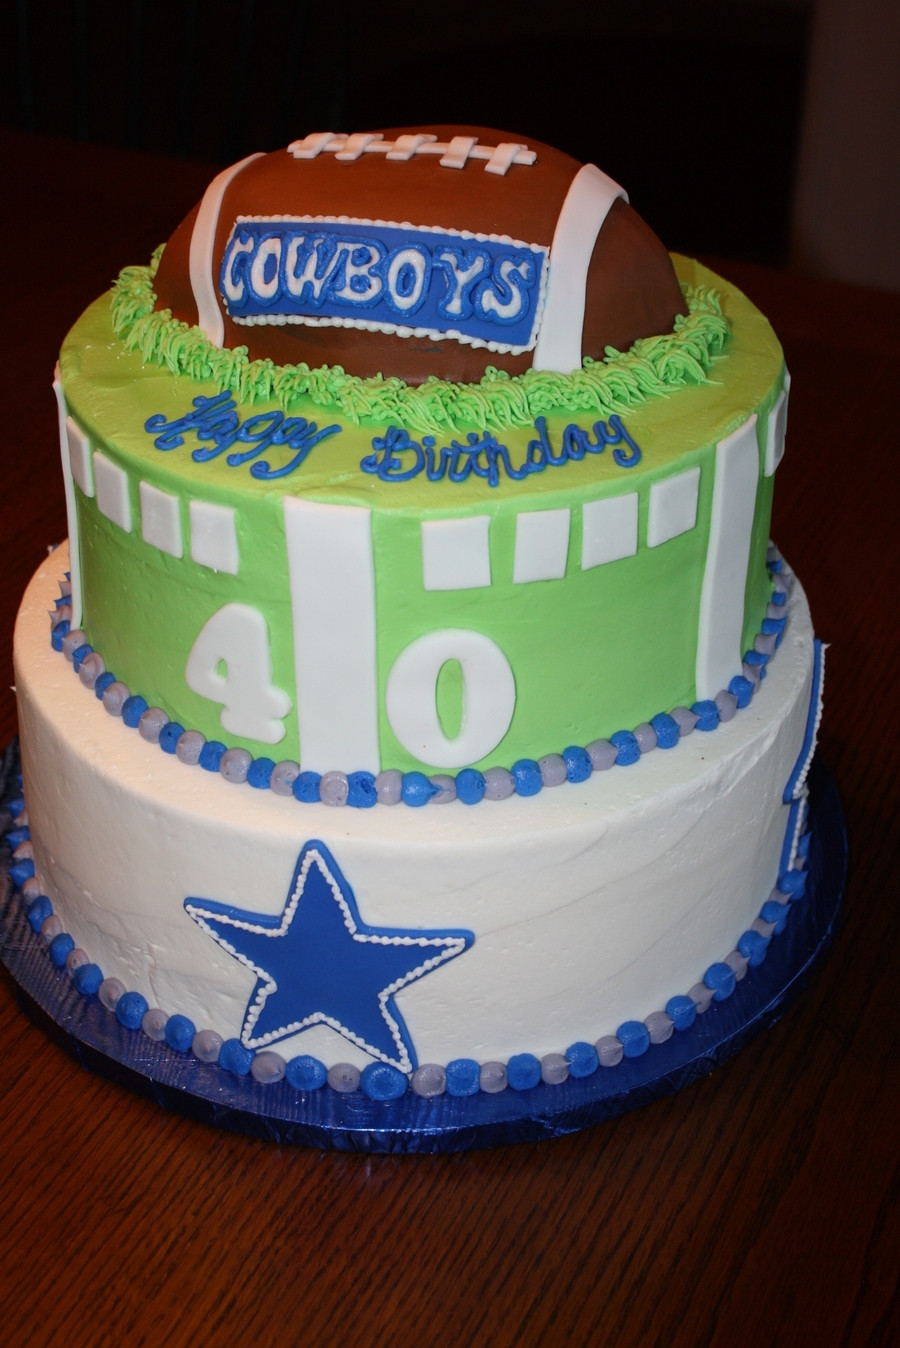 Dallas Cowboy Birthday Cake
 Dallas Cowboys Birthday Cake CakeCentral